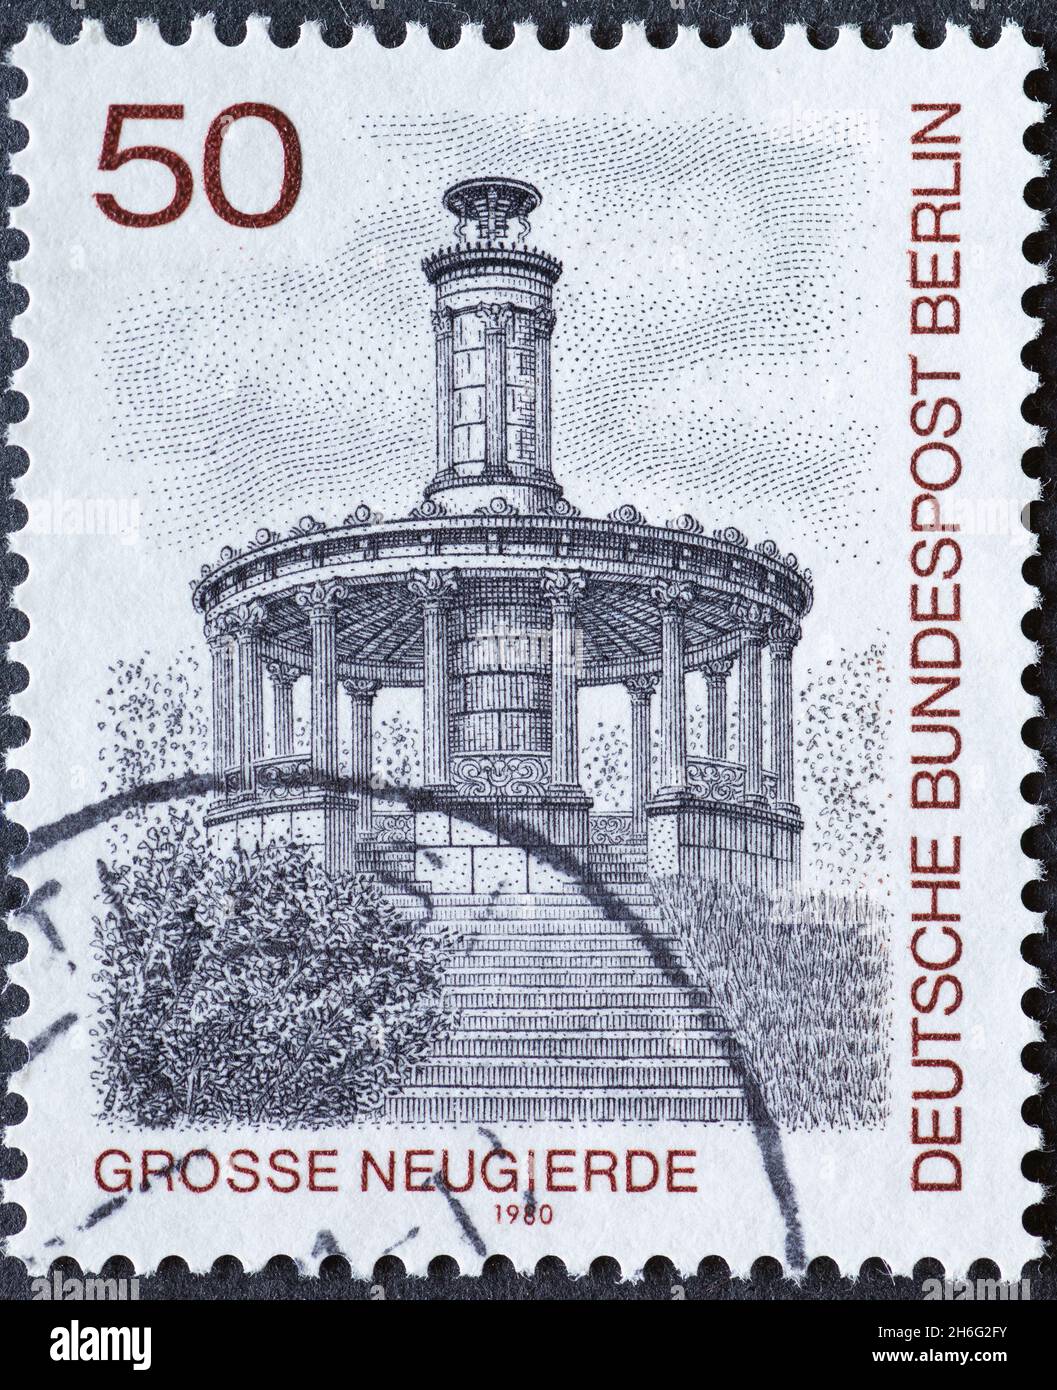 ALLEMAGNE, Berlin - VERS 1980: Timbre-poste d'Allemagne, Berlin montrant les vues historiques de Berlin: La grande curiosité, Schlosspark Klein Glienicke Banque D'Images